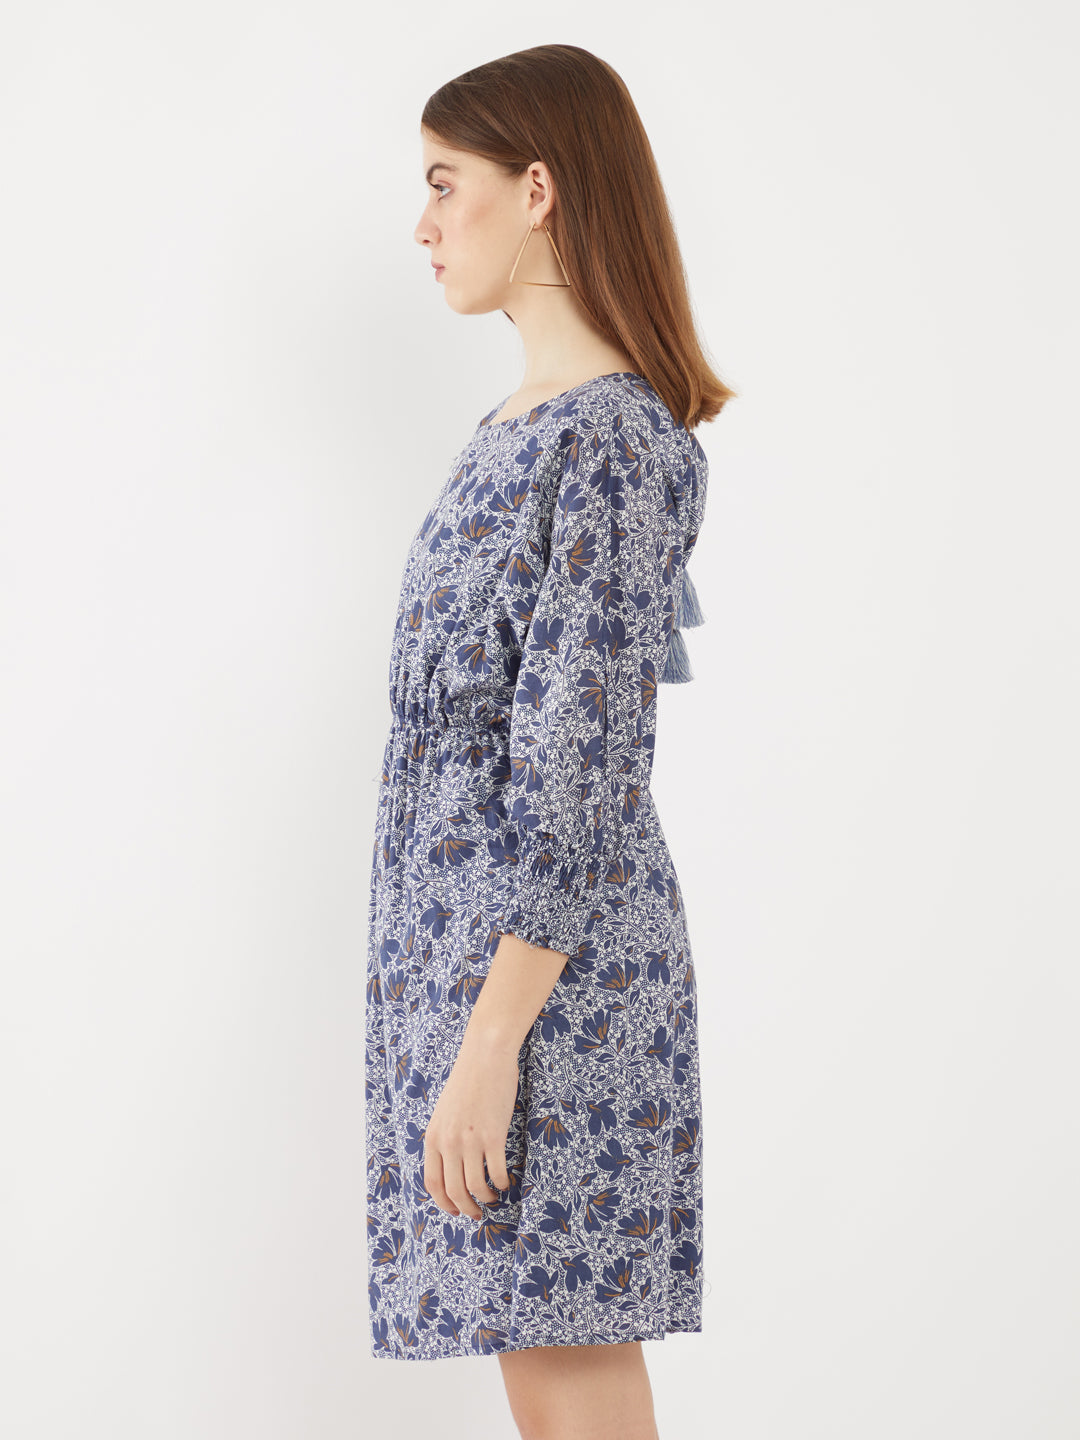 Blue Printed Short Dress For Women